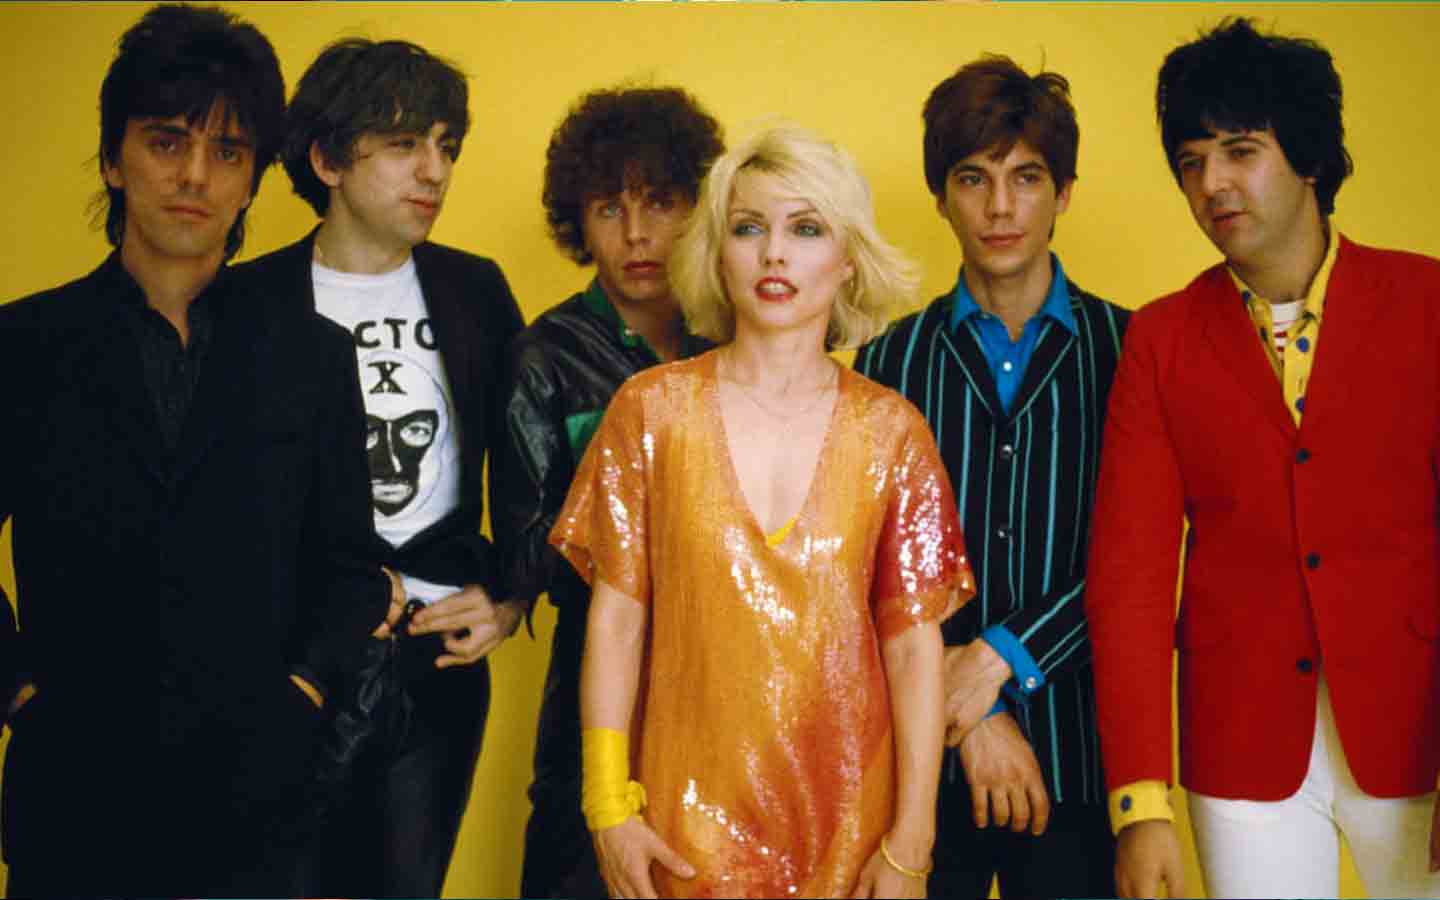 Hace 42 años Blondie alcanzó la posición # 1 con su canción “The Tide is High”